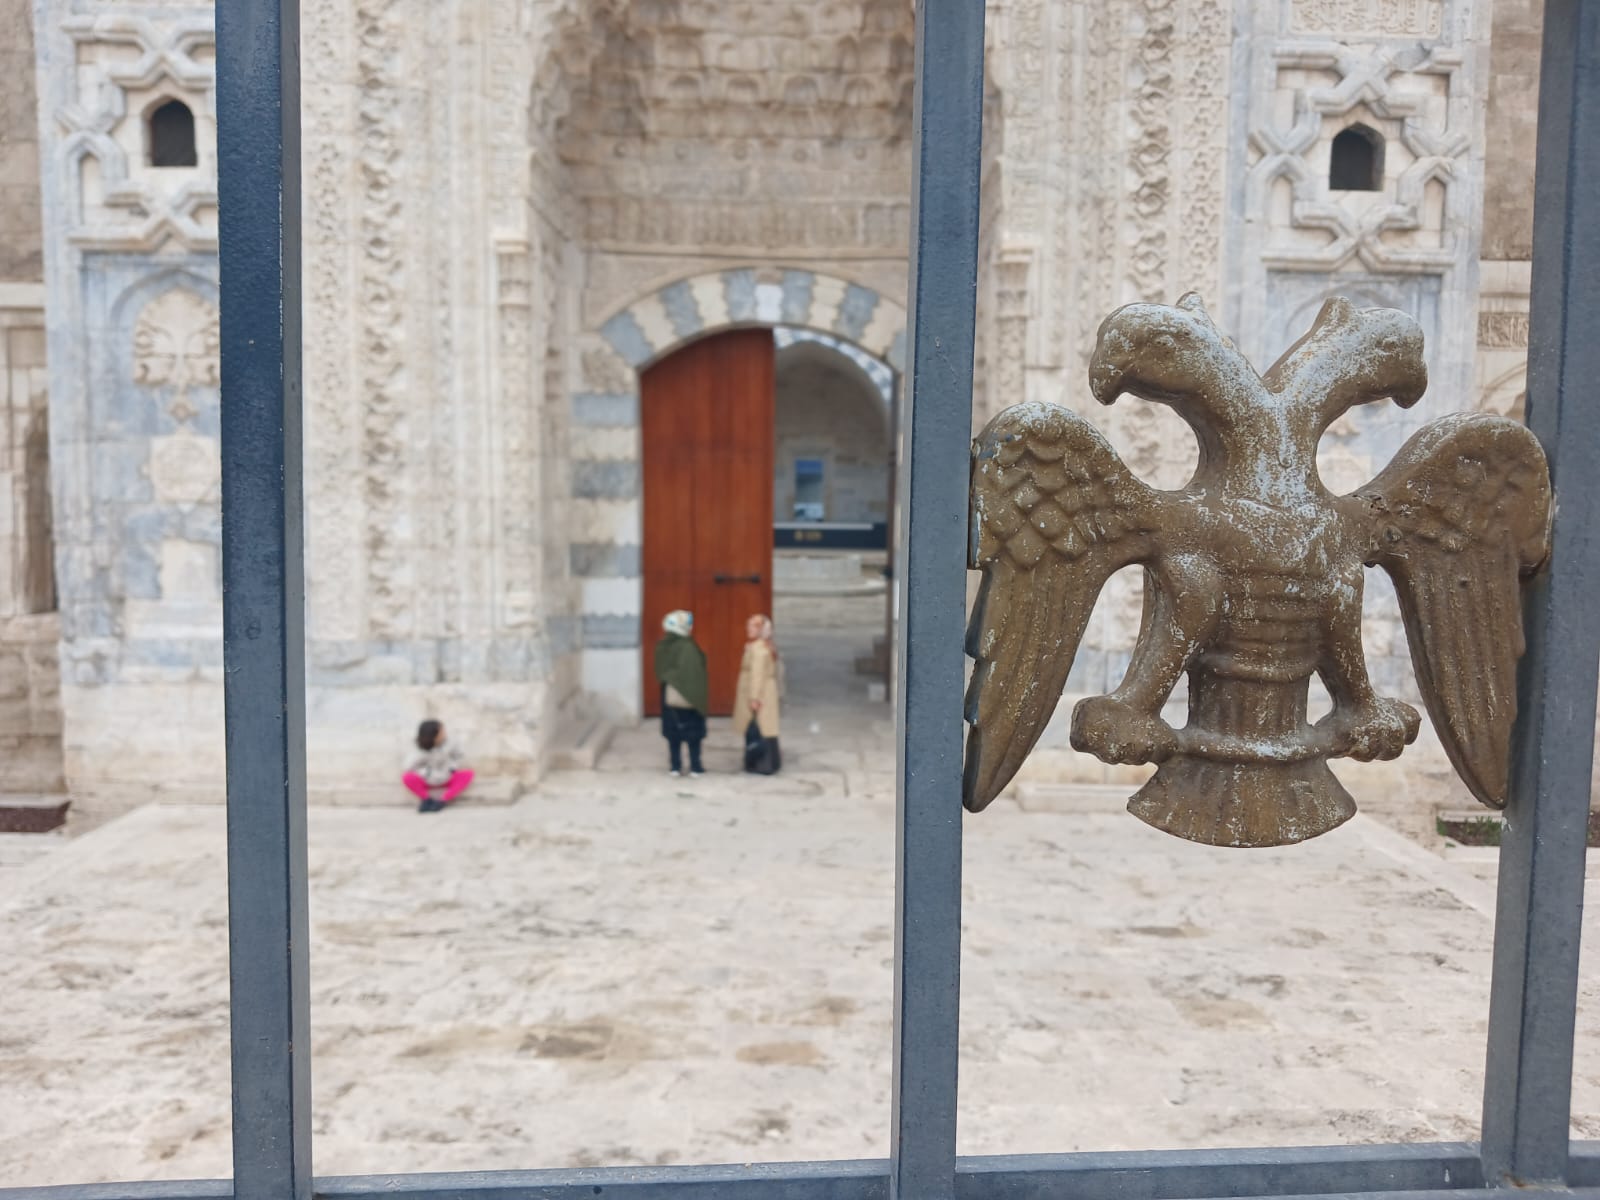 Sivas’ın Tarihi Gökmedresesi, Ziyaretçileri Etkisi Altına Almaya Devam Ediyor